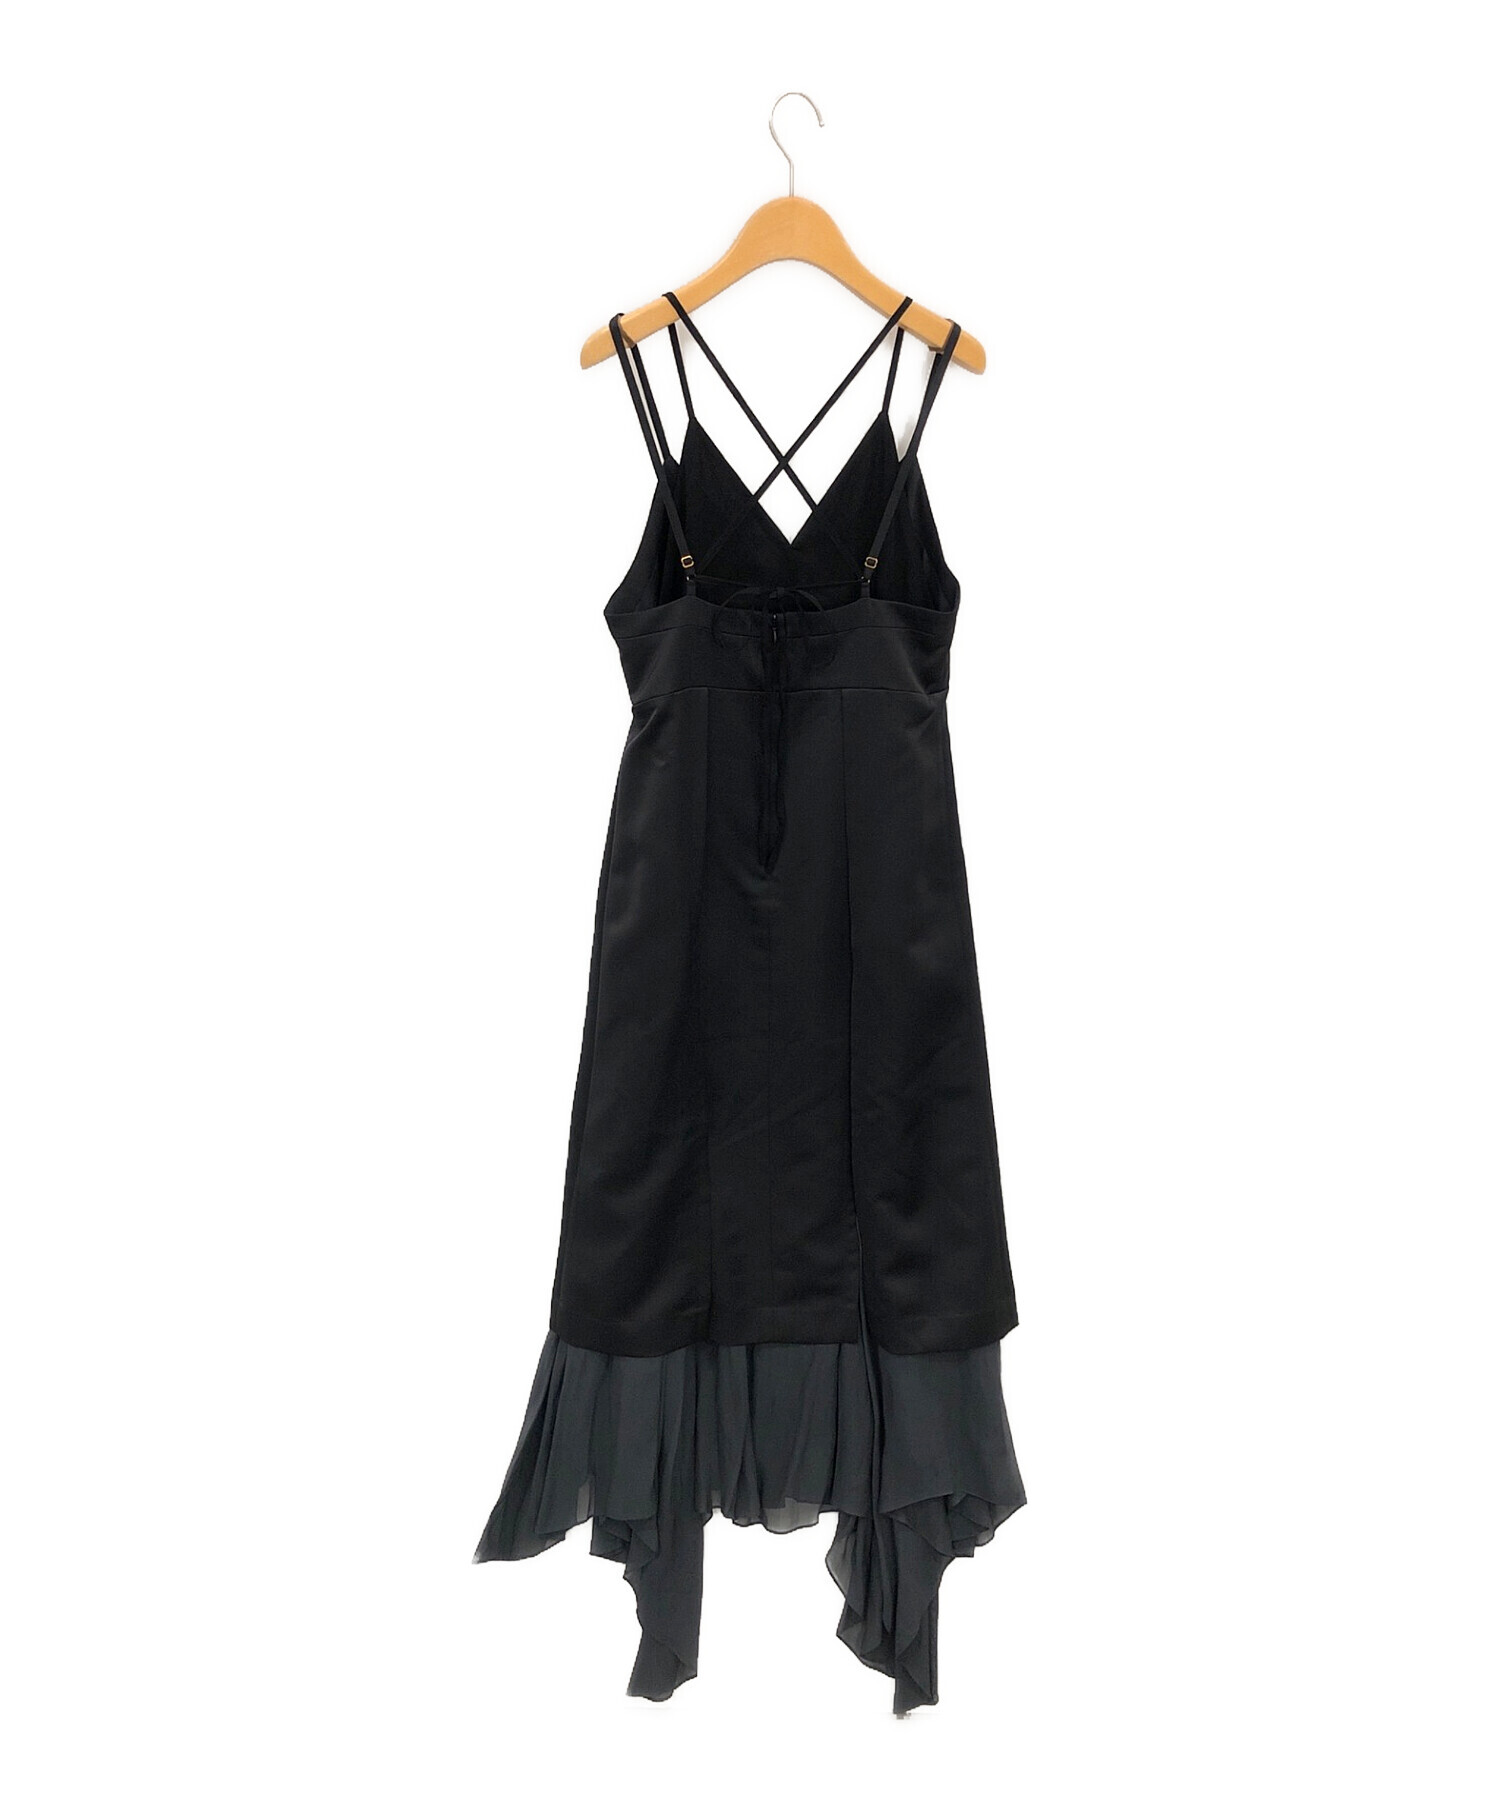 MURRAL (ミューラル) Flutters camisole dress ブラック サイズ:2